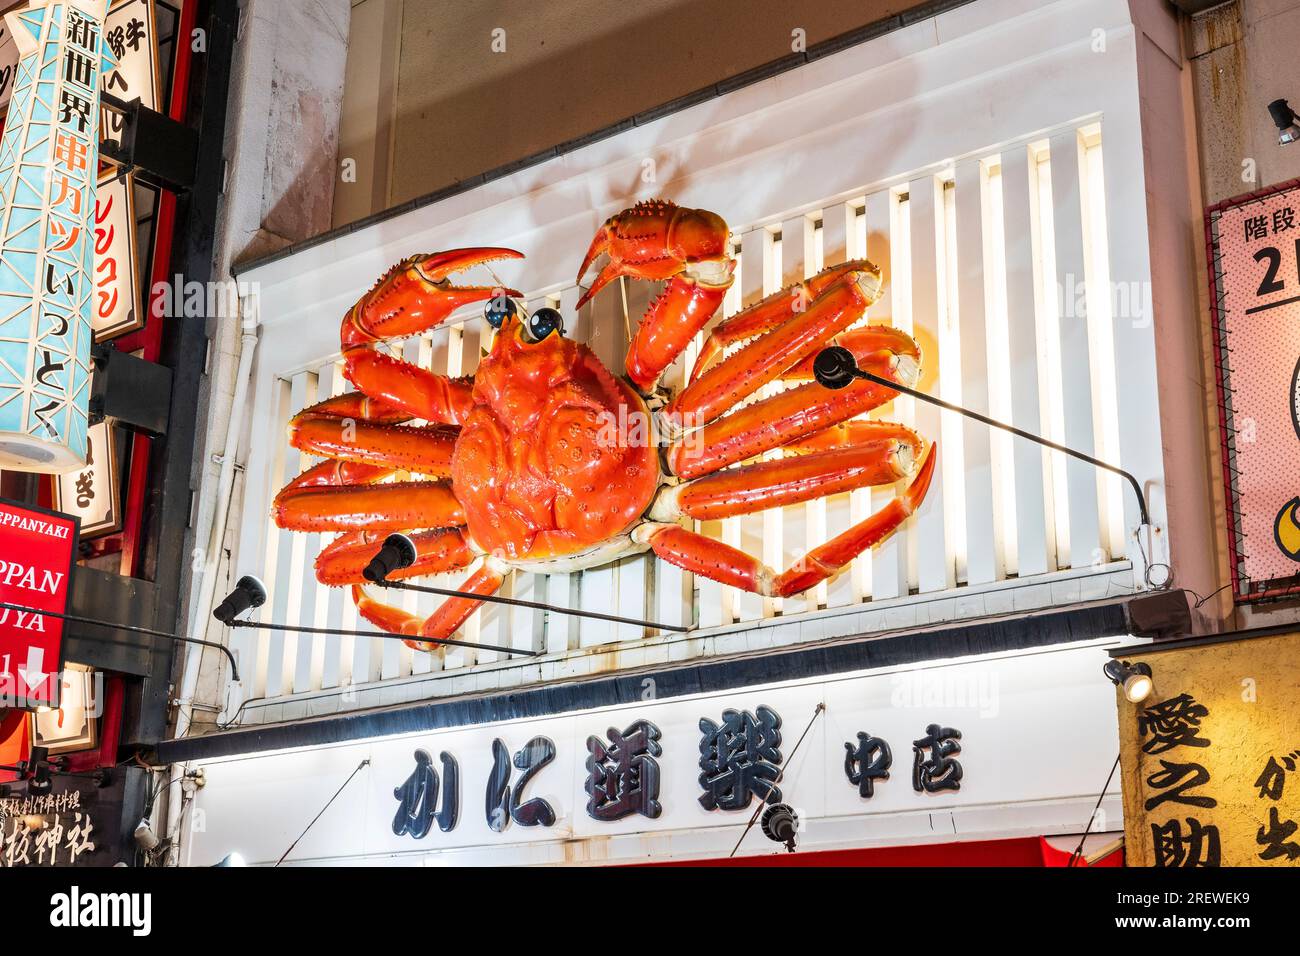 The famous iconic moving mechanical crab illuminated at night, above the entrance to the Kani Doraku Dotombori Nakamise restaurant, Dotonbori, Osaka. Stock Photo